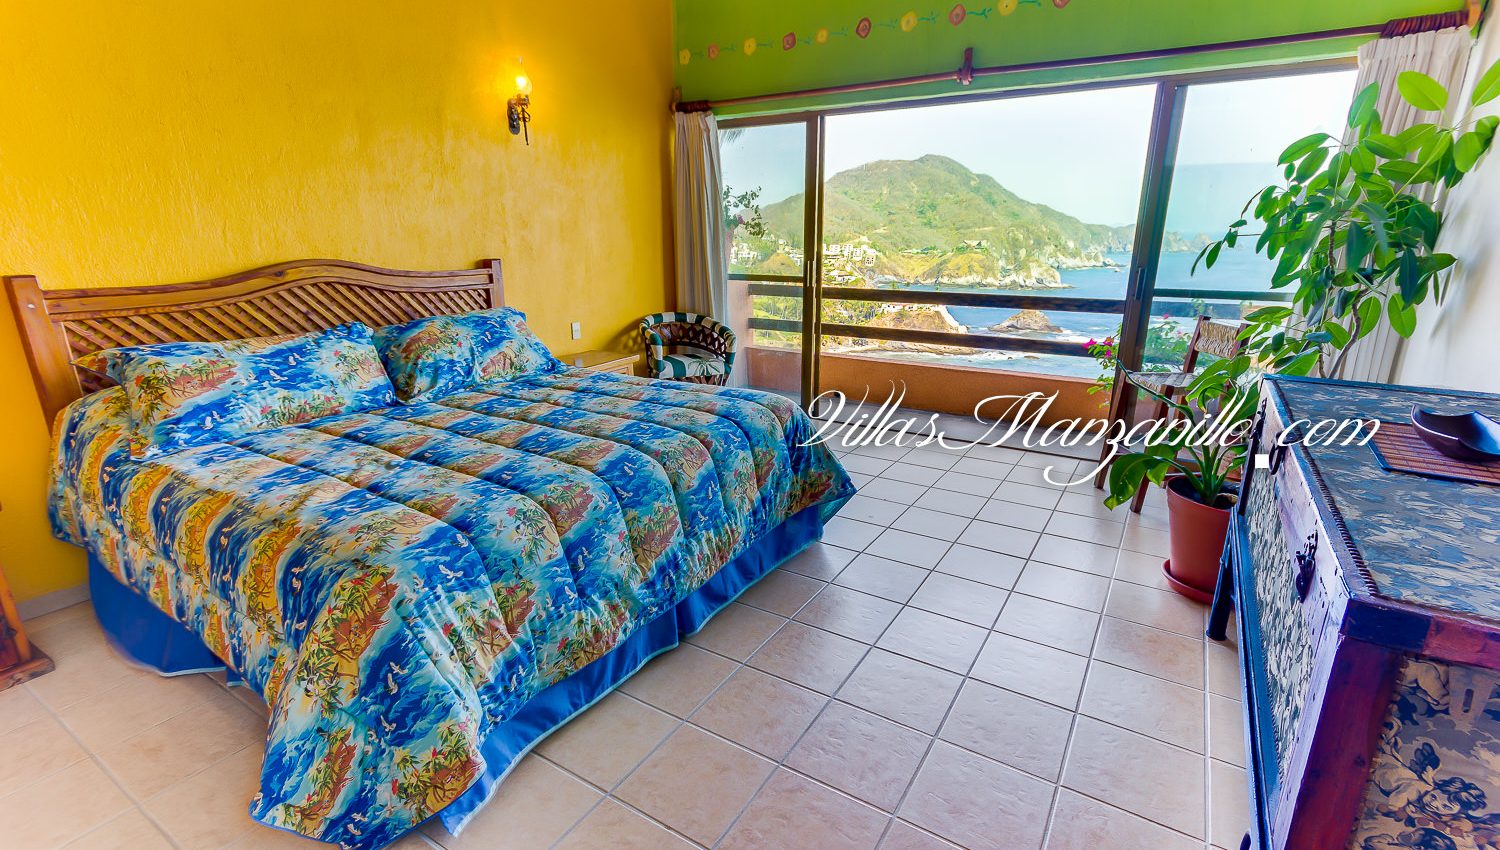 Se renta for rent Villa Oceano Azul Peninsula de Juluapan Manzanillo Colima Mexico